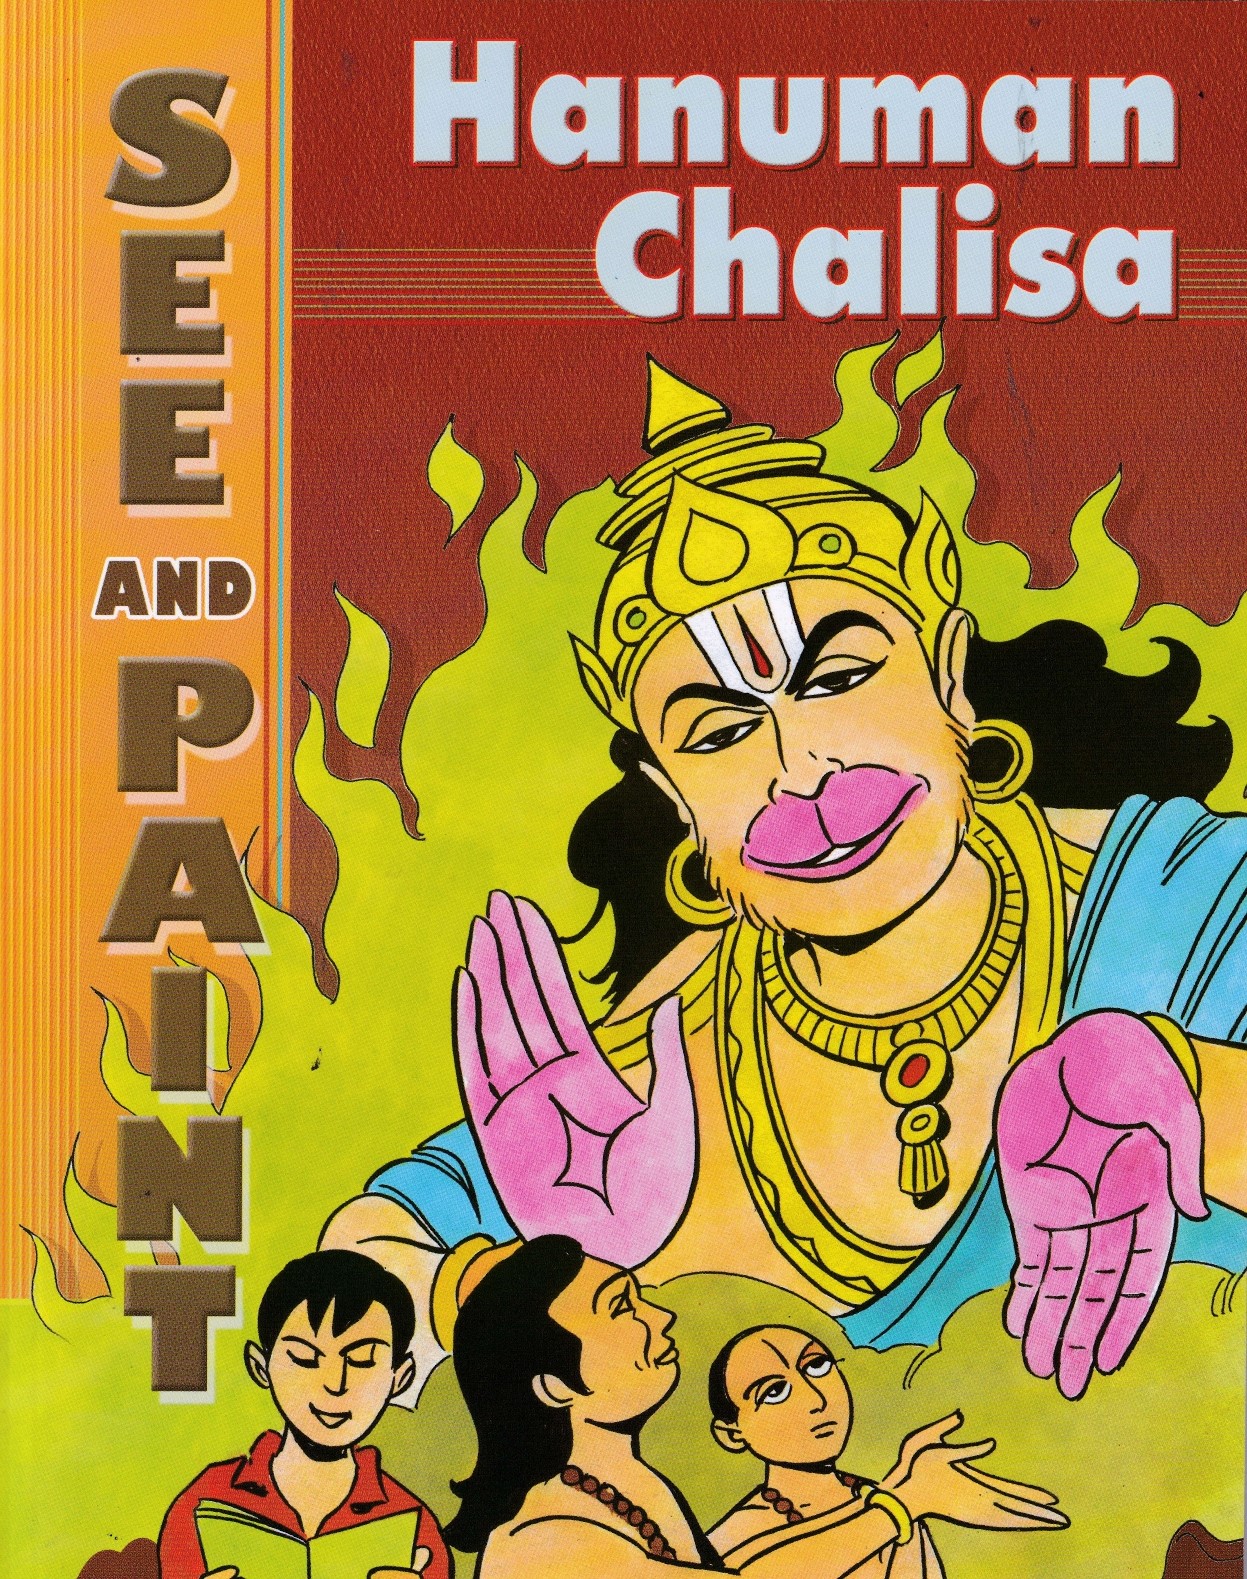 See and Paint- Volume 4 - Hanuman Chalisa